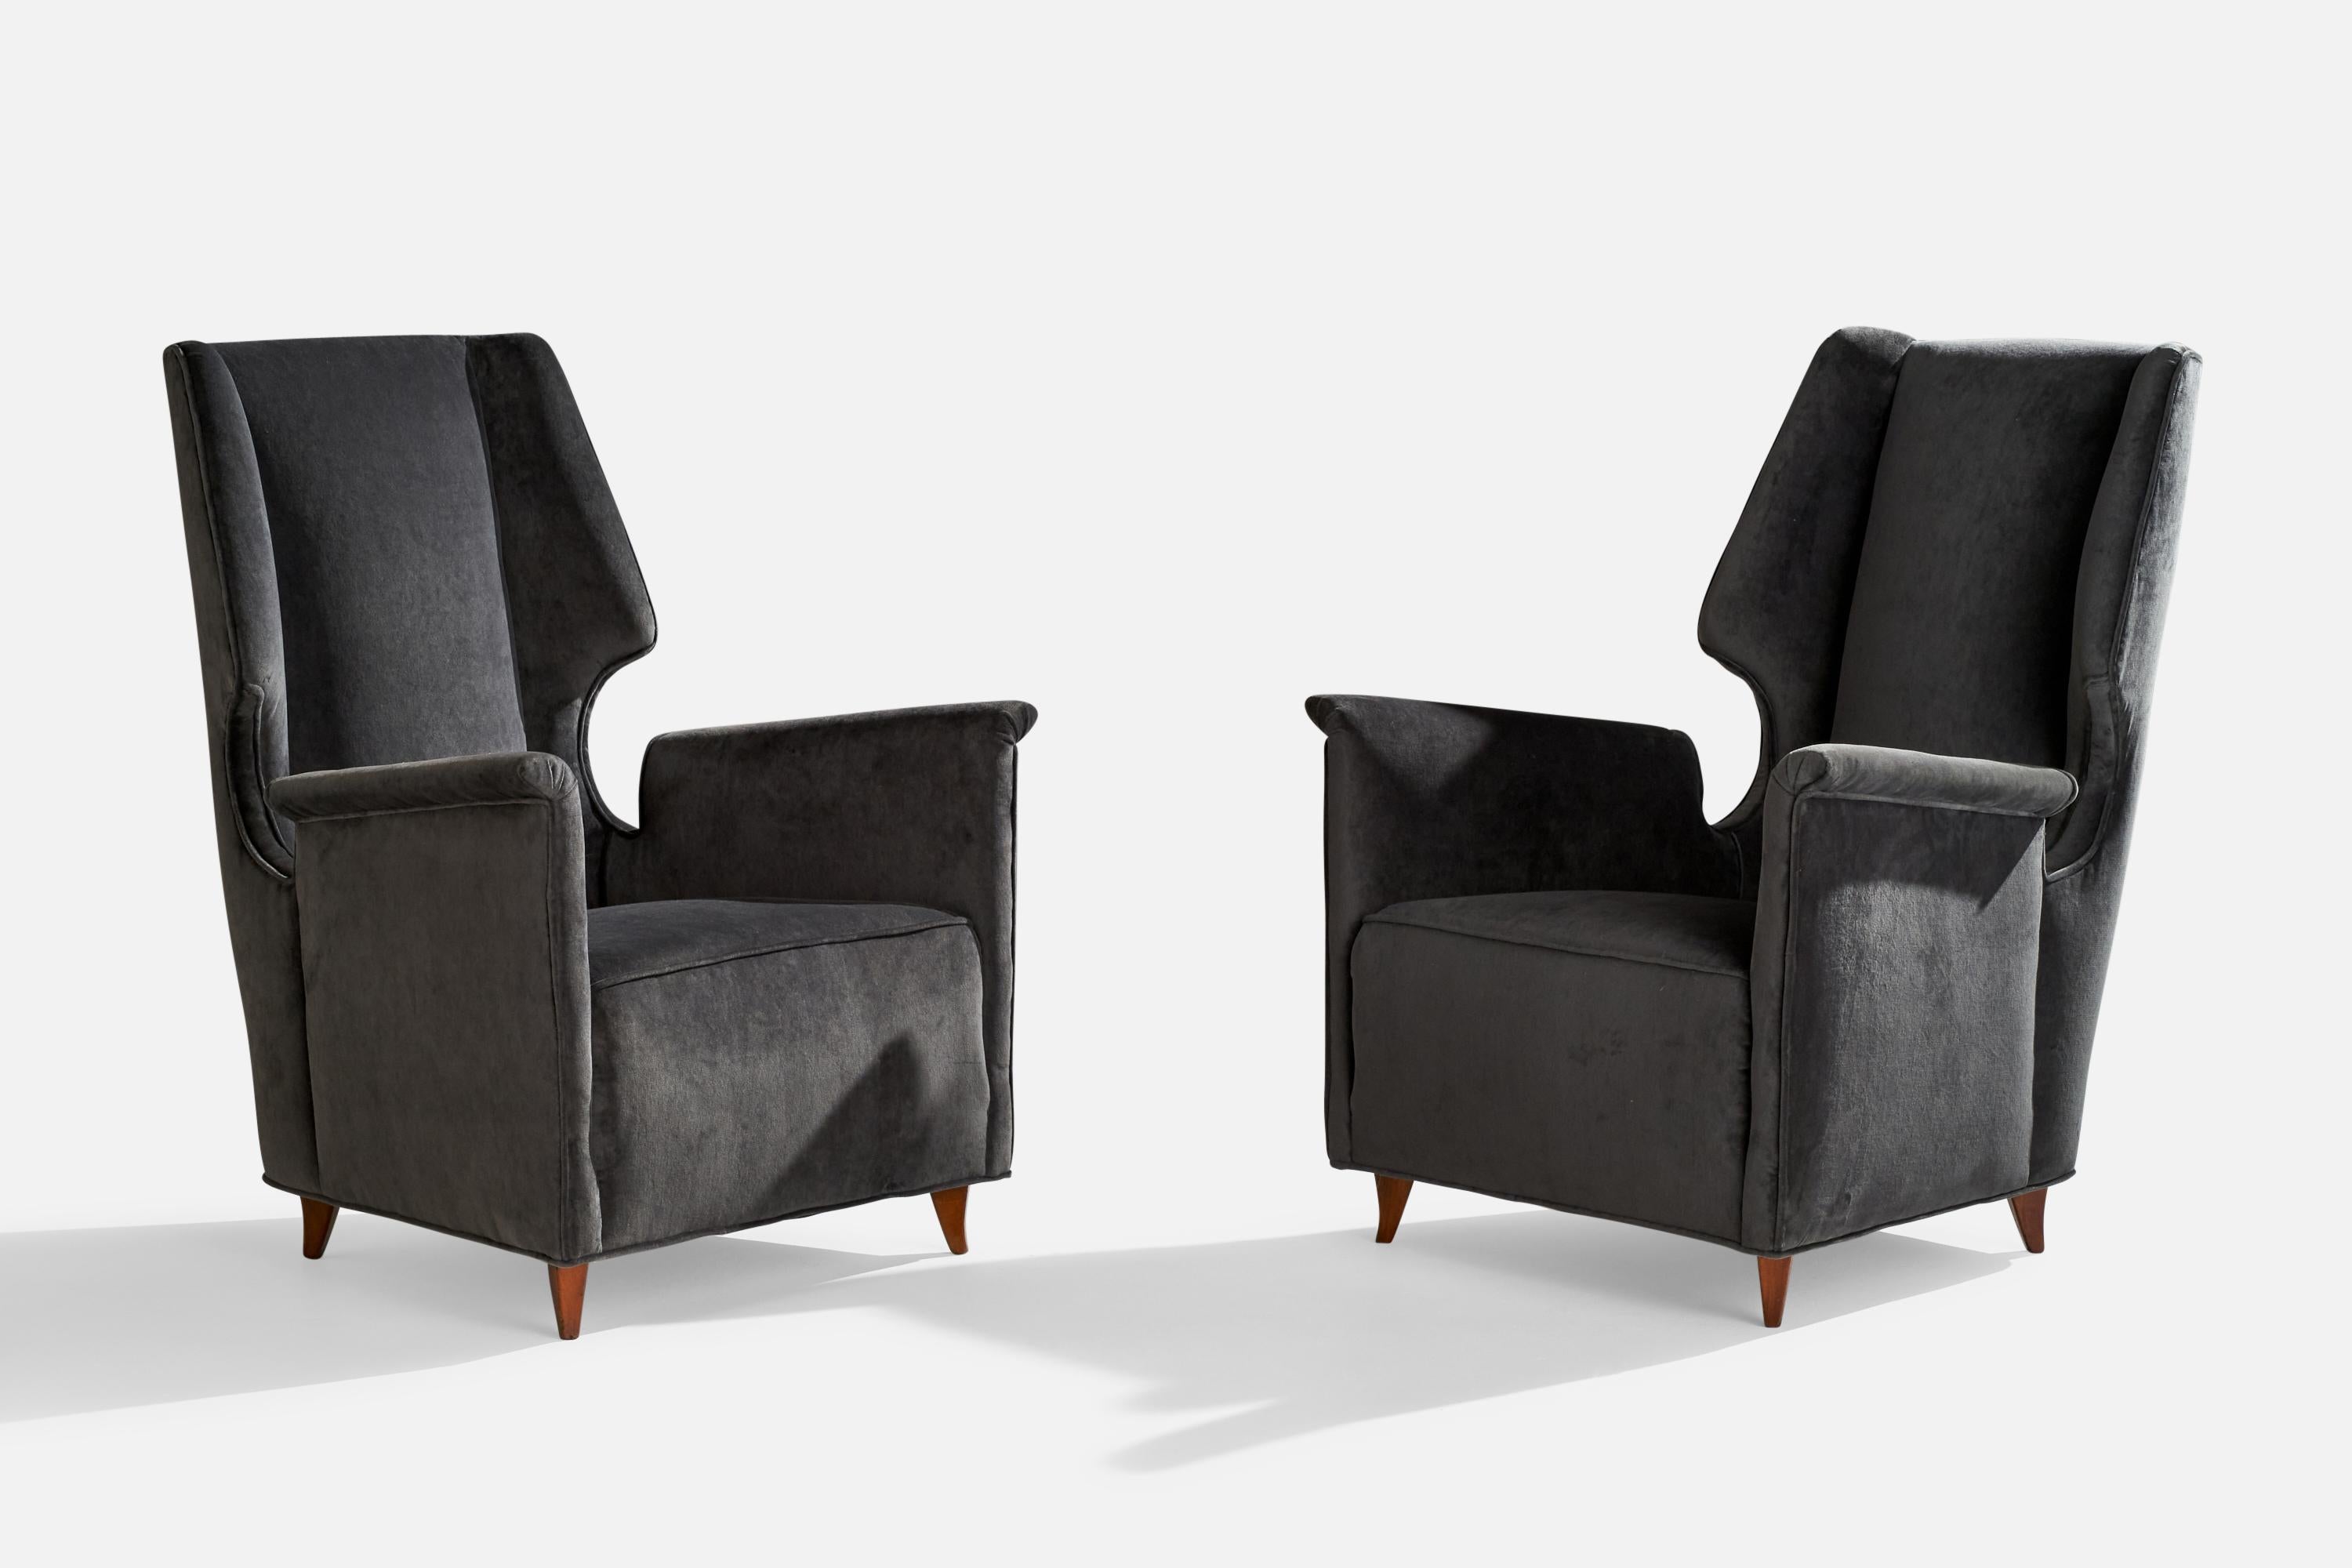 Paire de chaises longues en bois et en velours gris foncé, conçues et produites en Italie, années 1950.

hauteur du siège 15.56